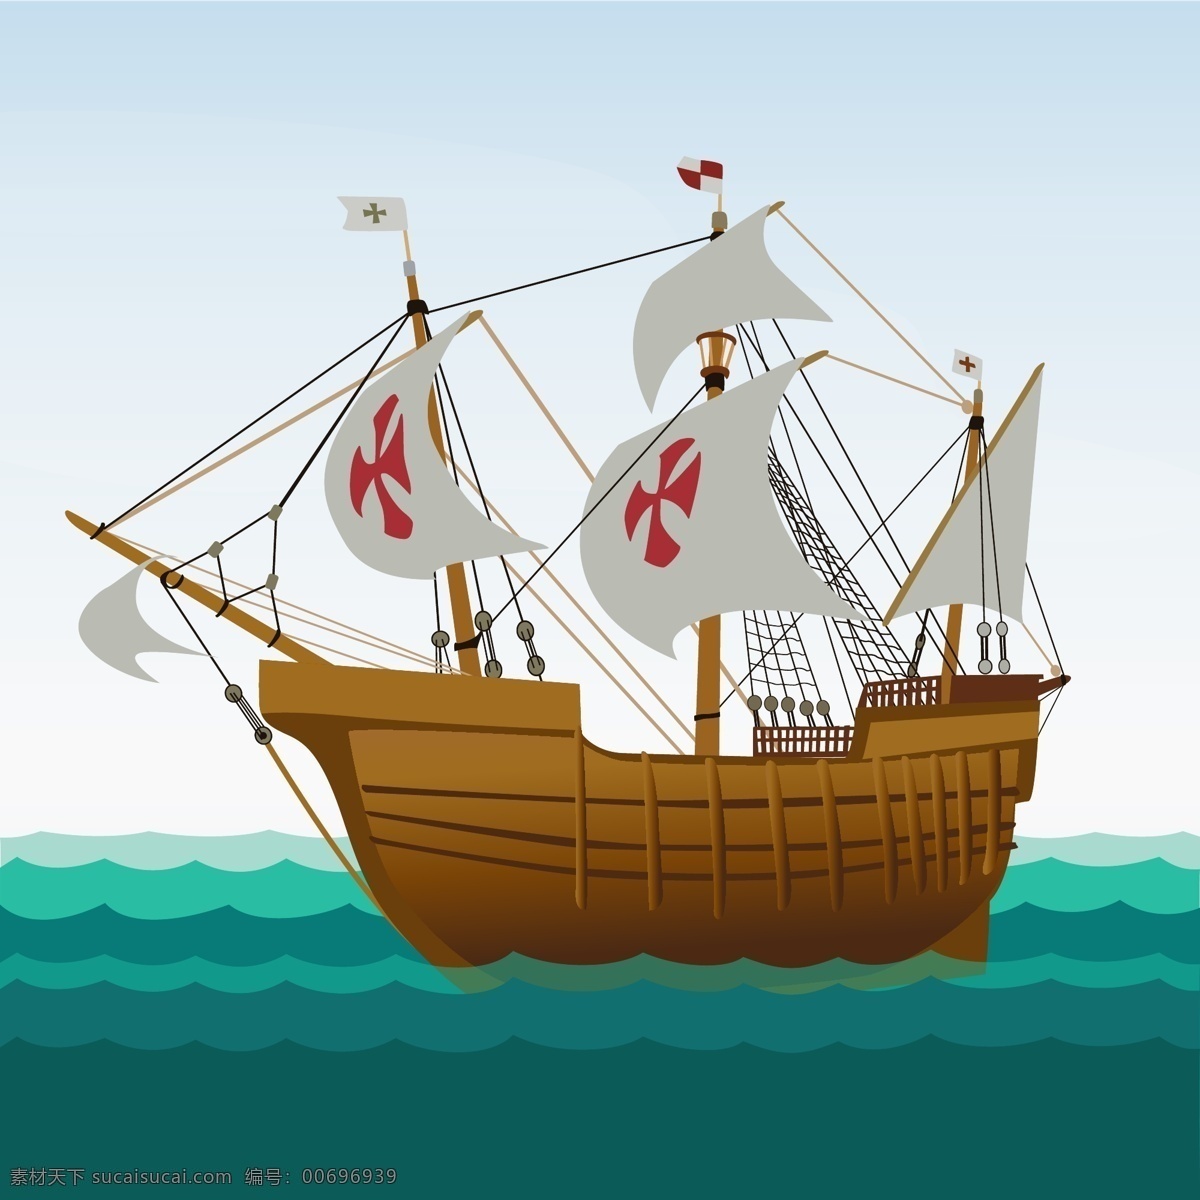 卡通 海盗船 背景 广告设计模板 ai素材 卡通素材 展板 海洋 航行 白色船帆 绿色海洋 木色船只